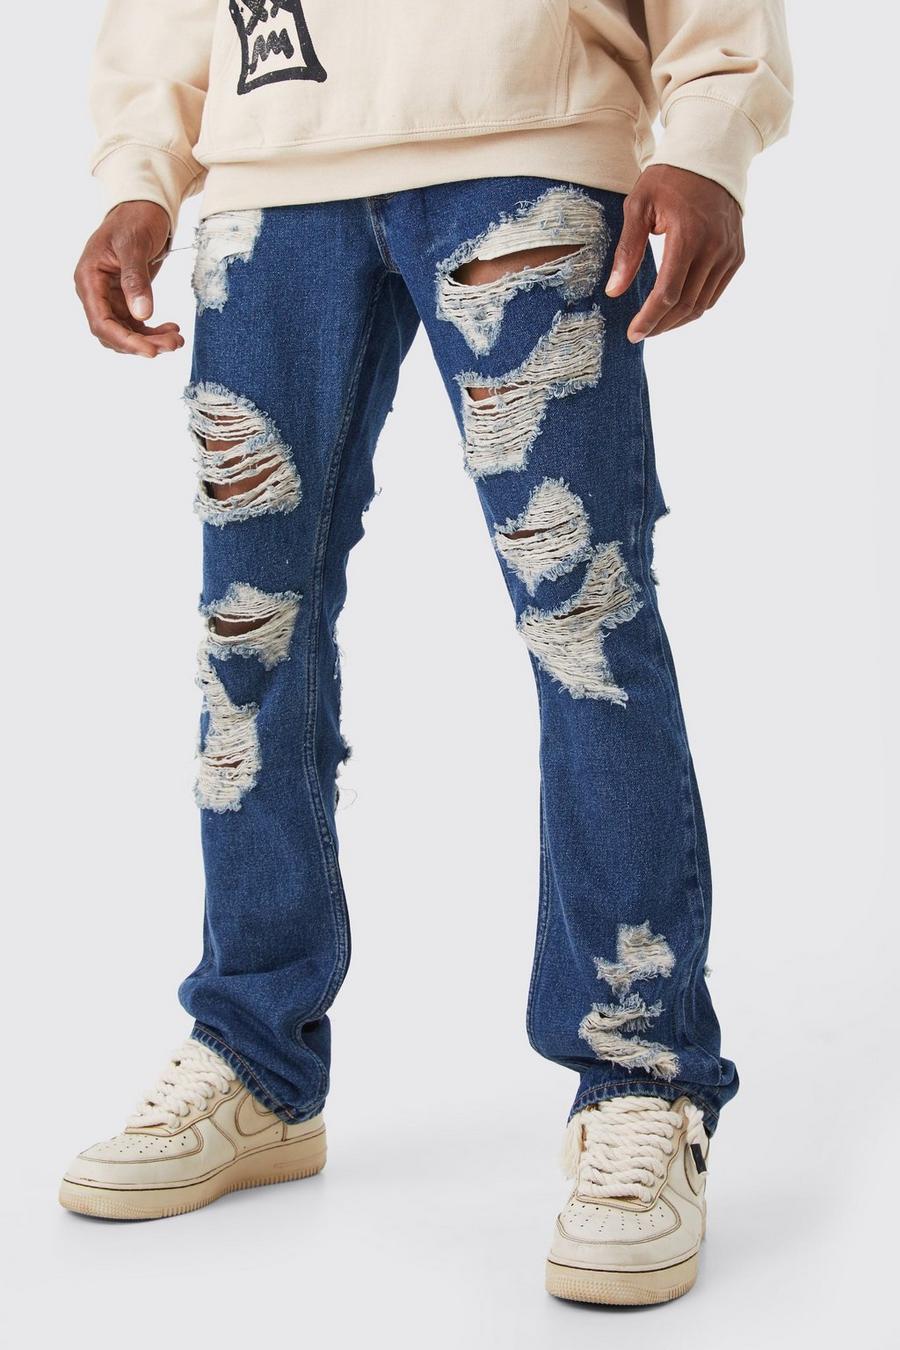 Jeans Official Slim Fit a zampa in tessuto rigido con applique, Antique wash blue